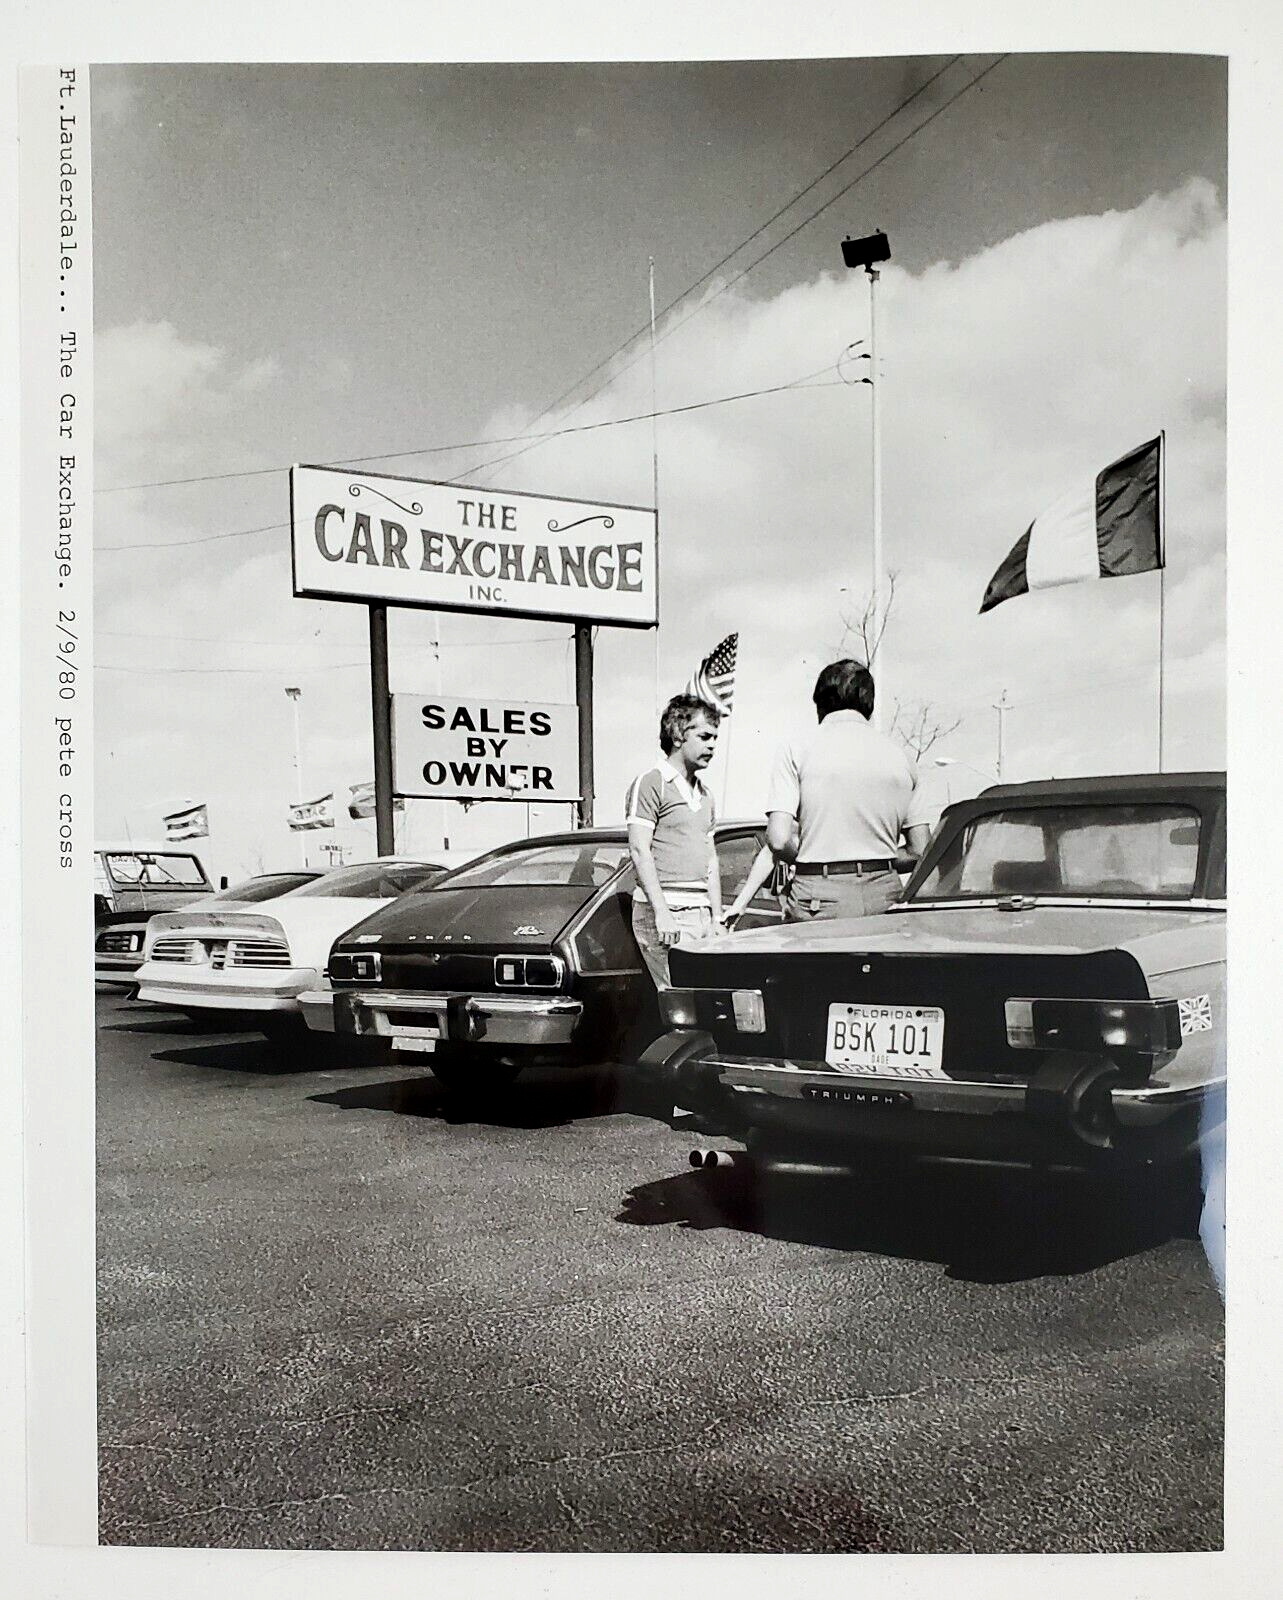 1980 Ft Lauderdale Florida FL Car Exchange Car Lot Sales Vintage Press Photo